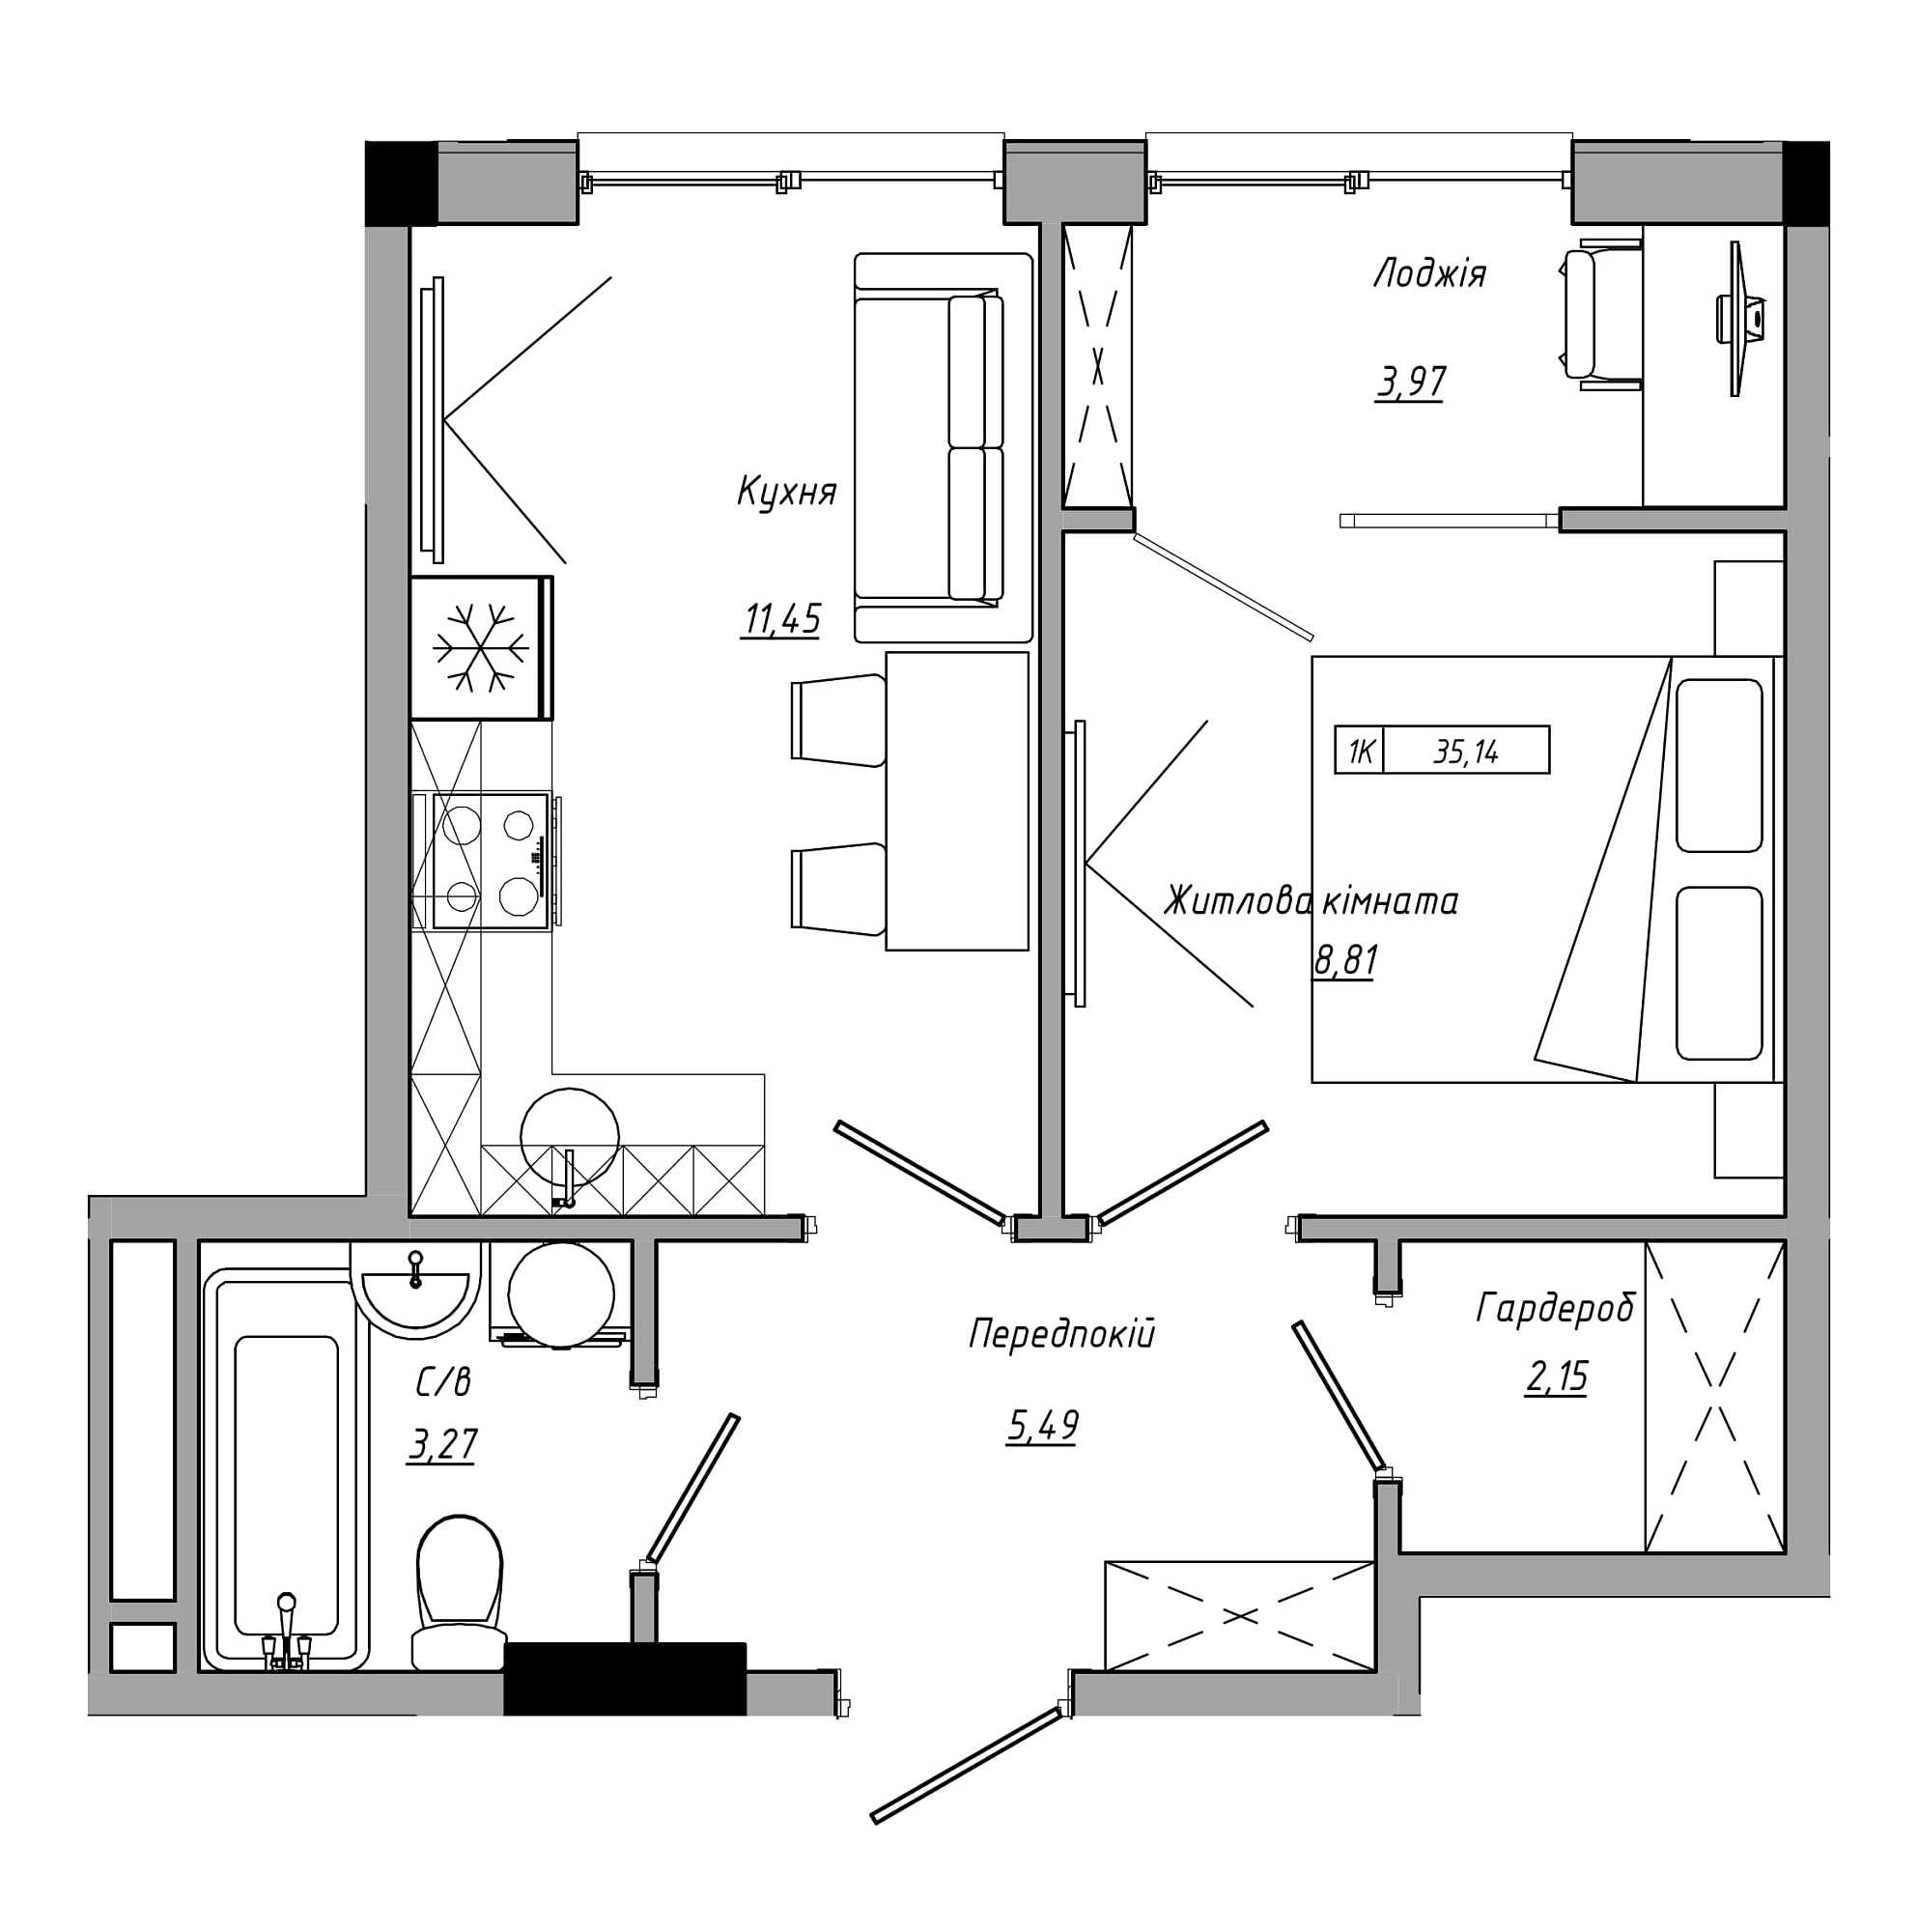 Планировка 1-к квартира площей 35.14м2, AB-21-11/00013.